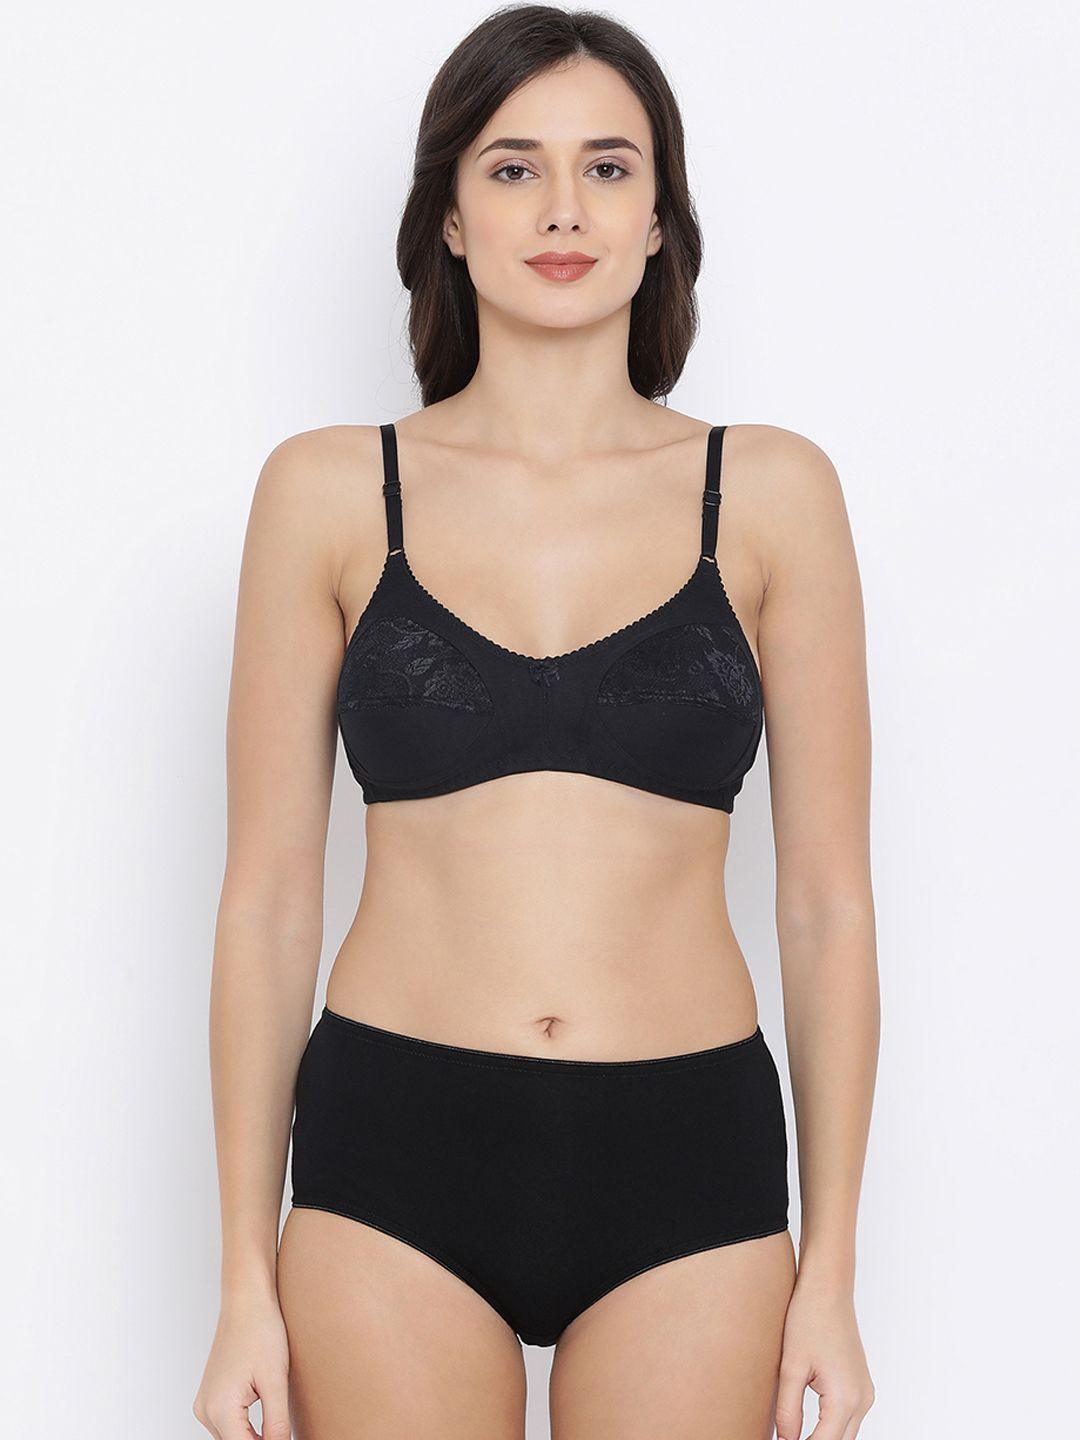 clovia women black solid lingerie set combbp68432b